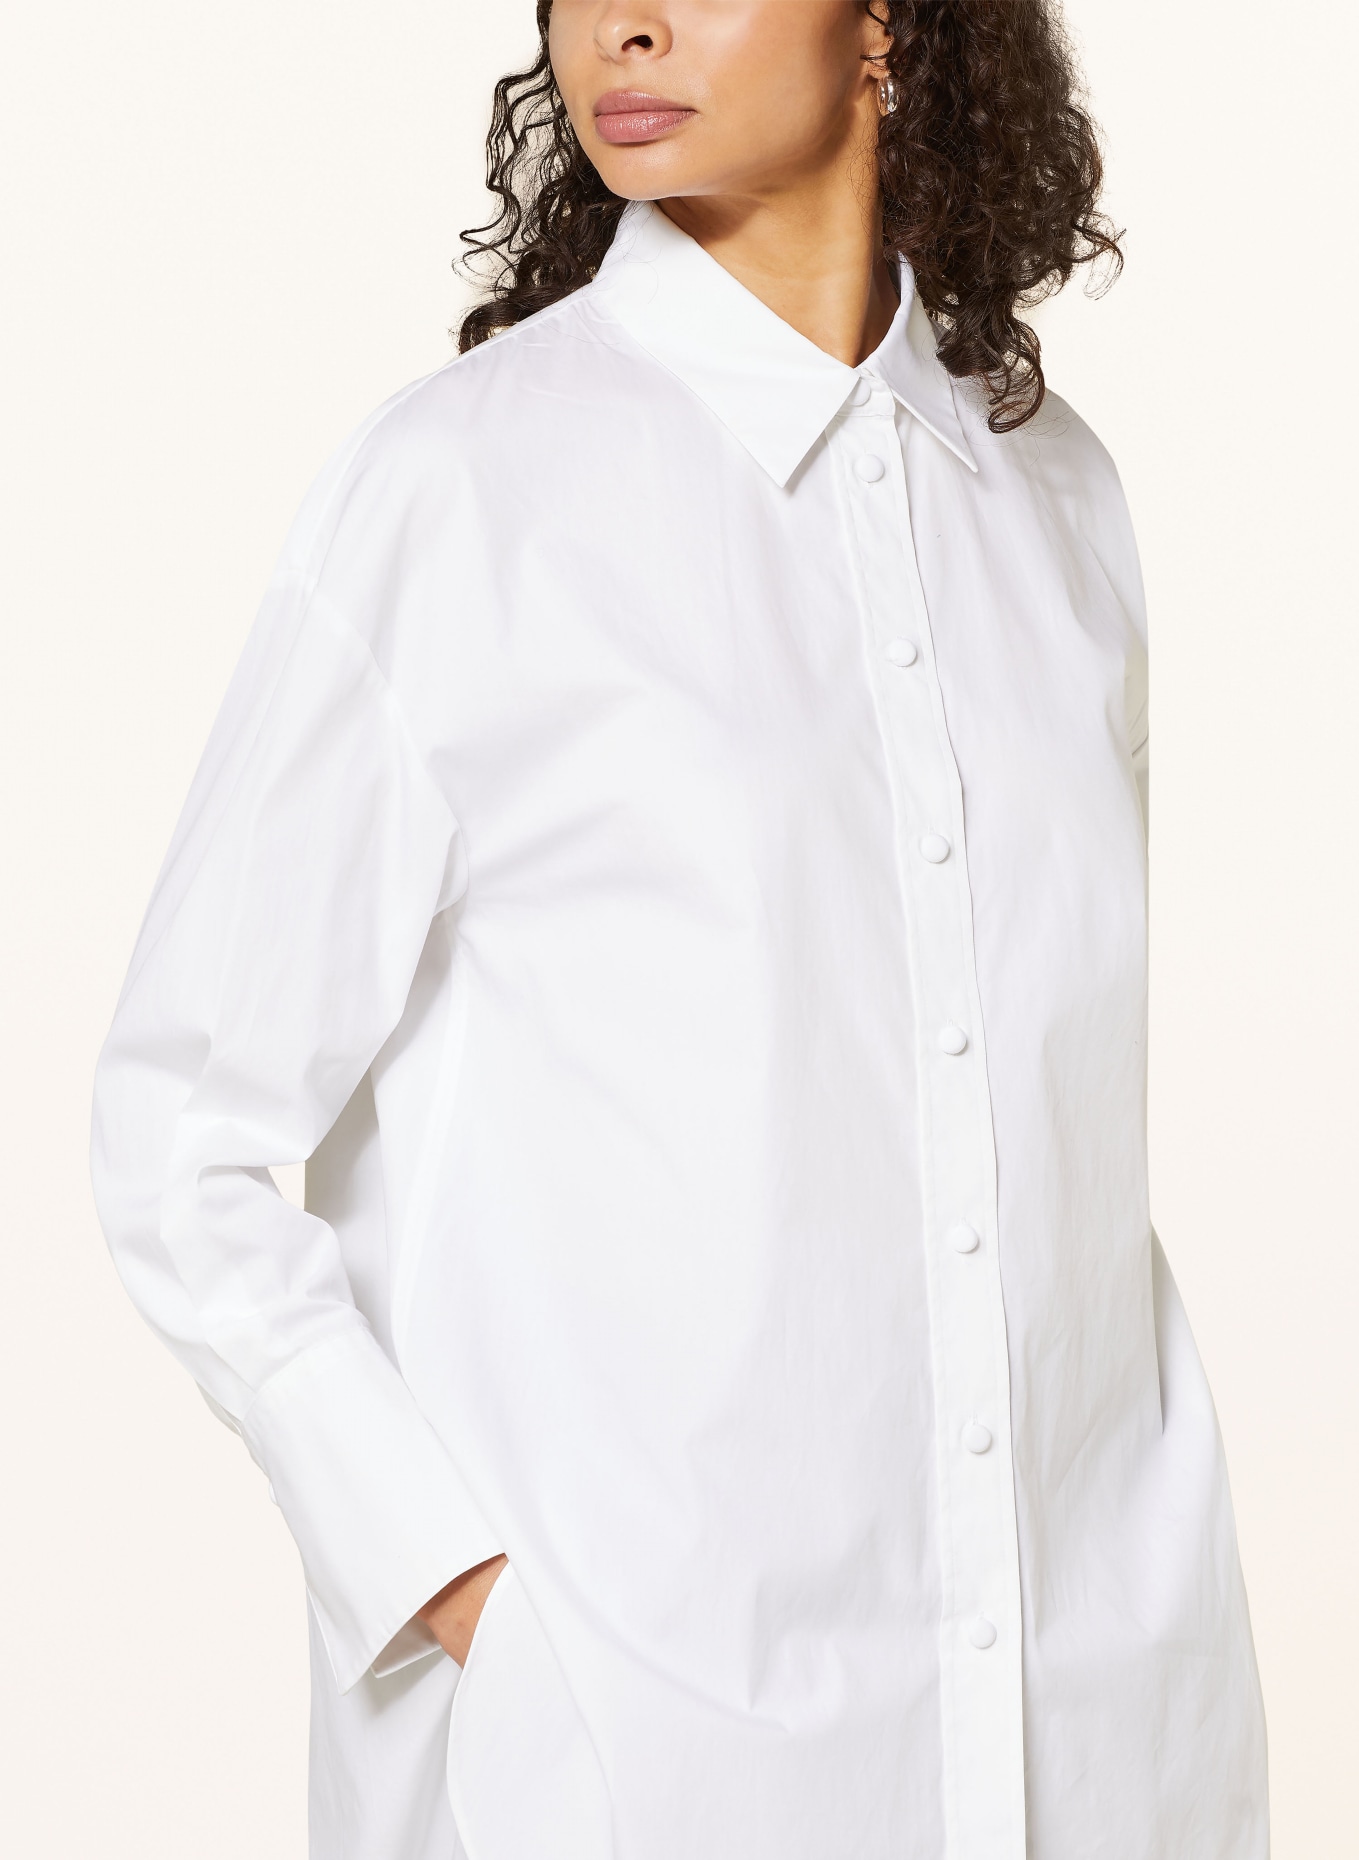 JOSEPH Oversized shirt blouse BERTON, Color: WHITE (Image 4)